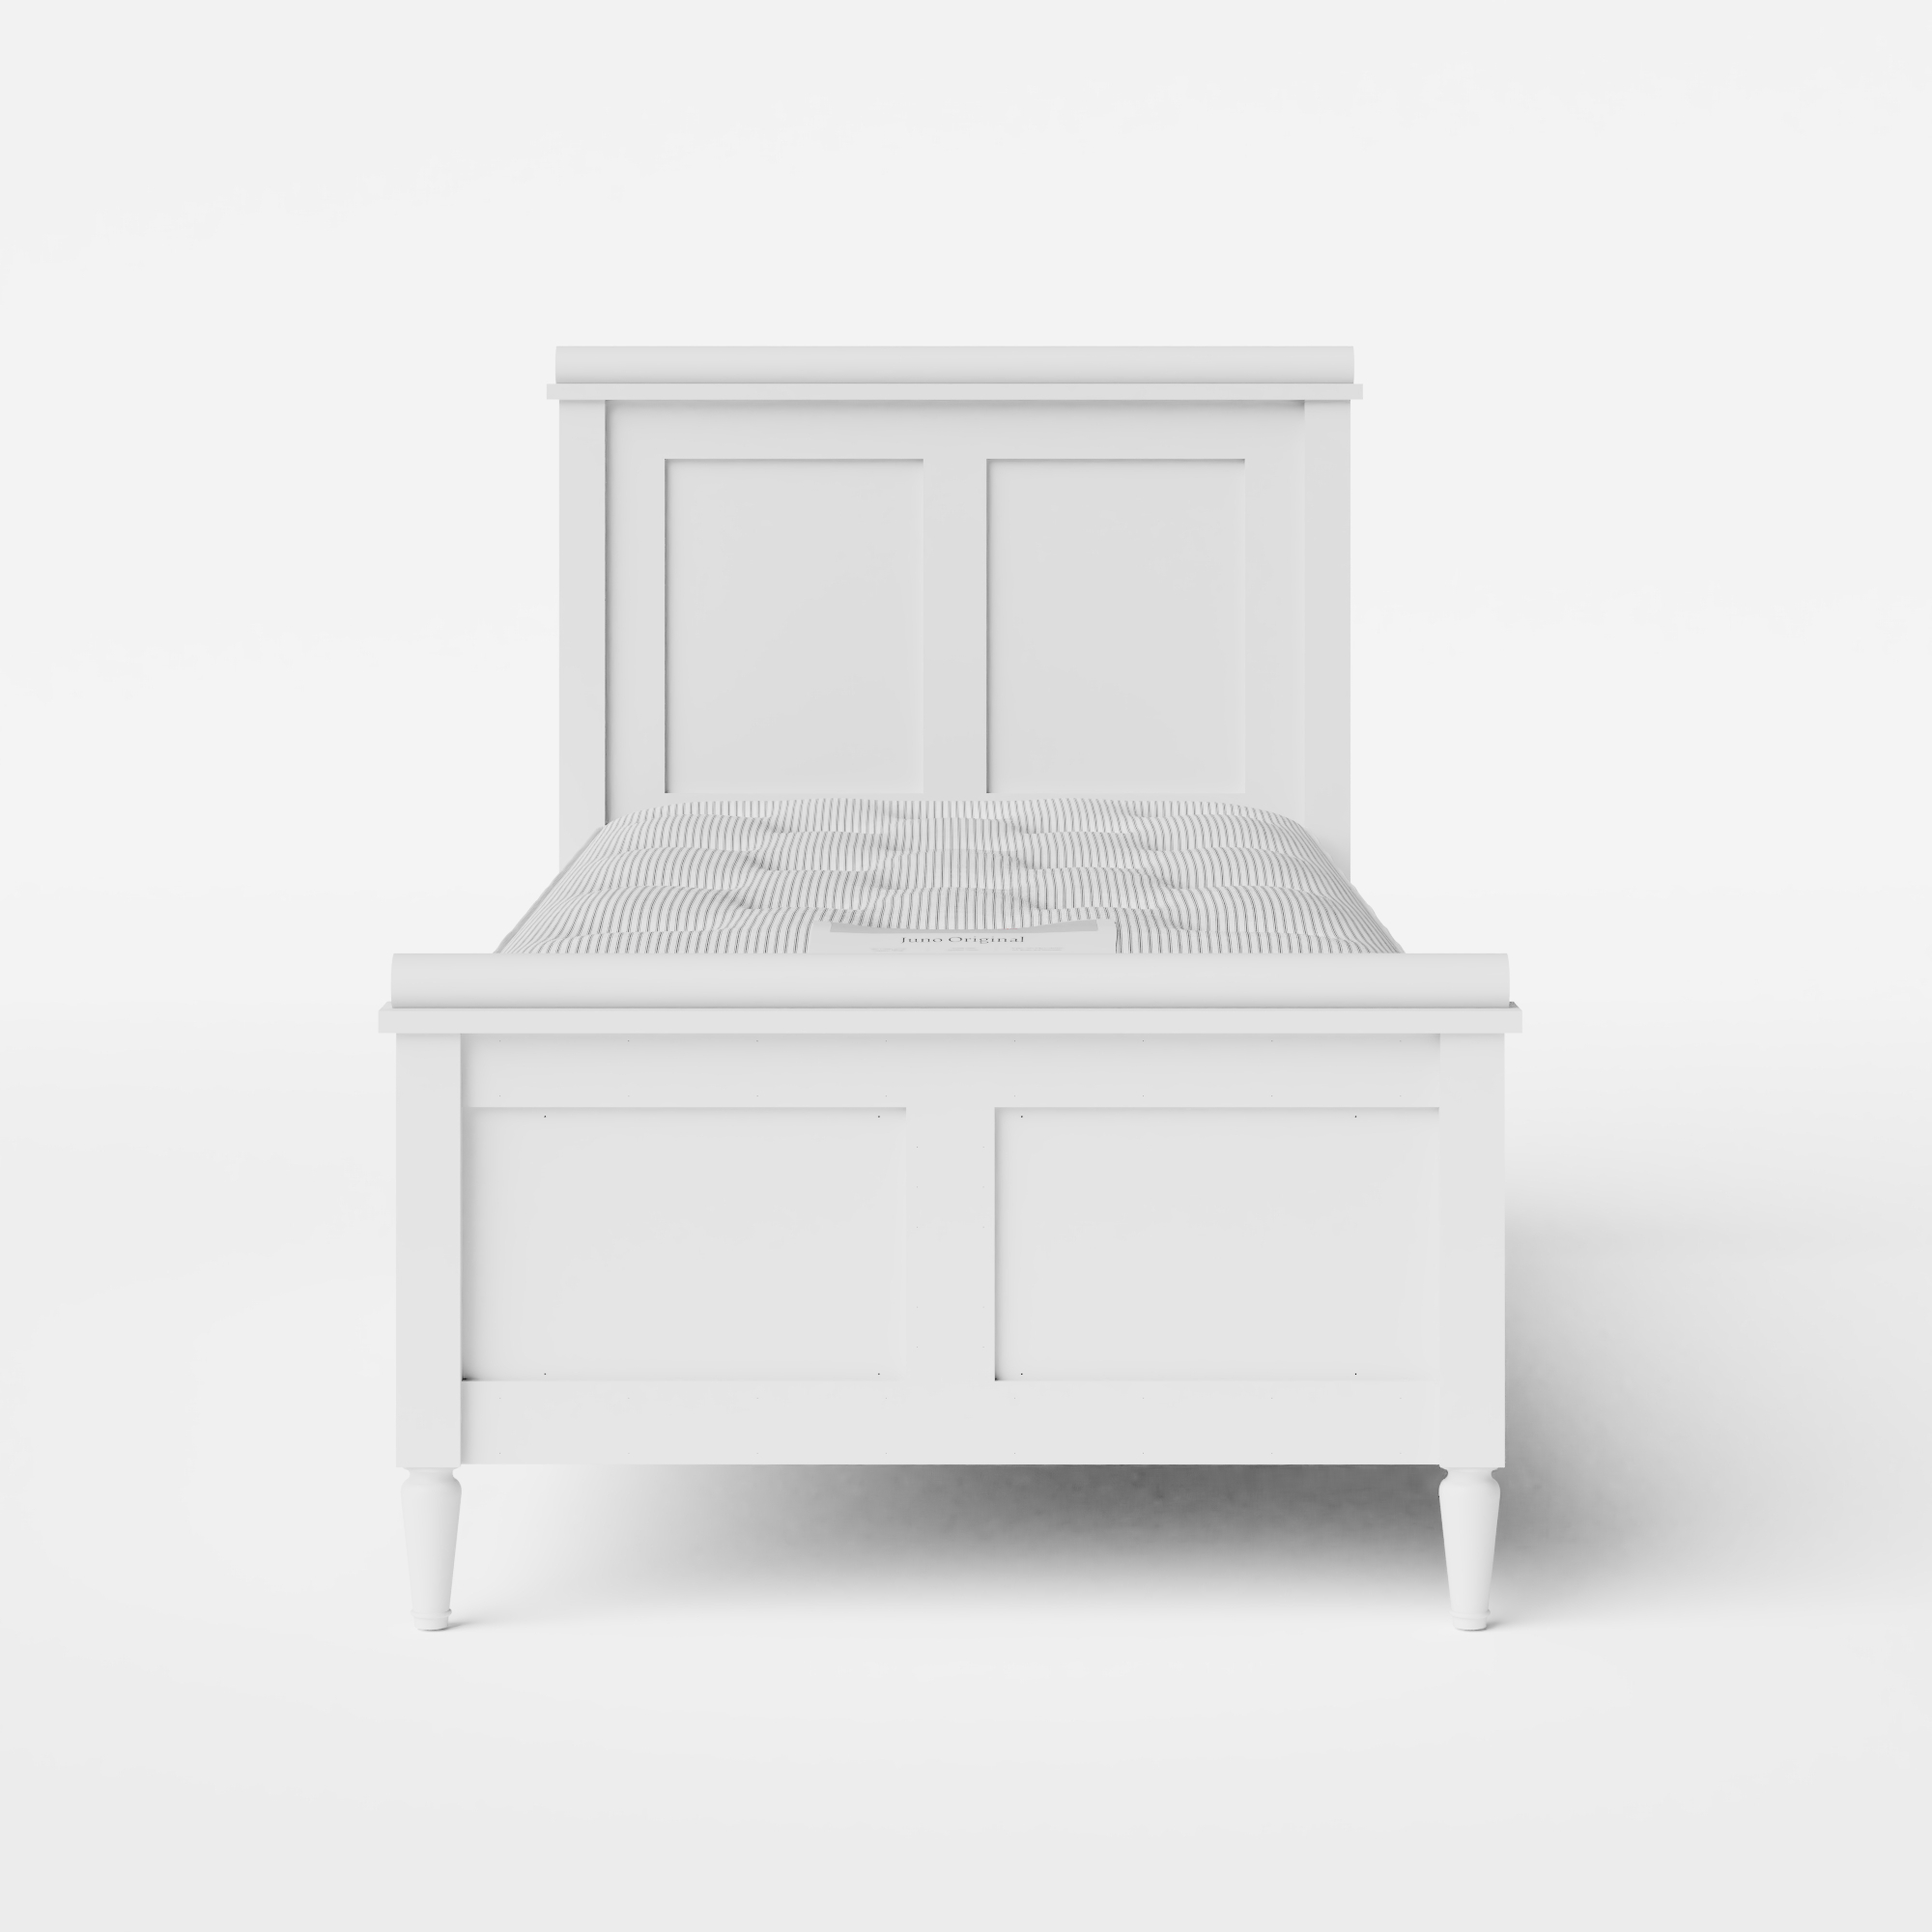 Nocturne Painted bemaltes einzelholzbett in weiß mit Juno matratze